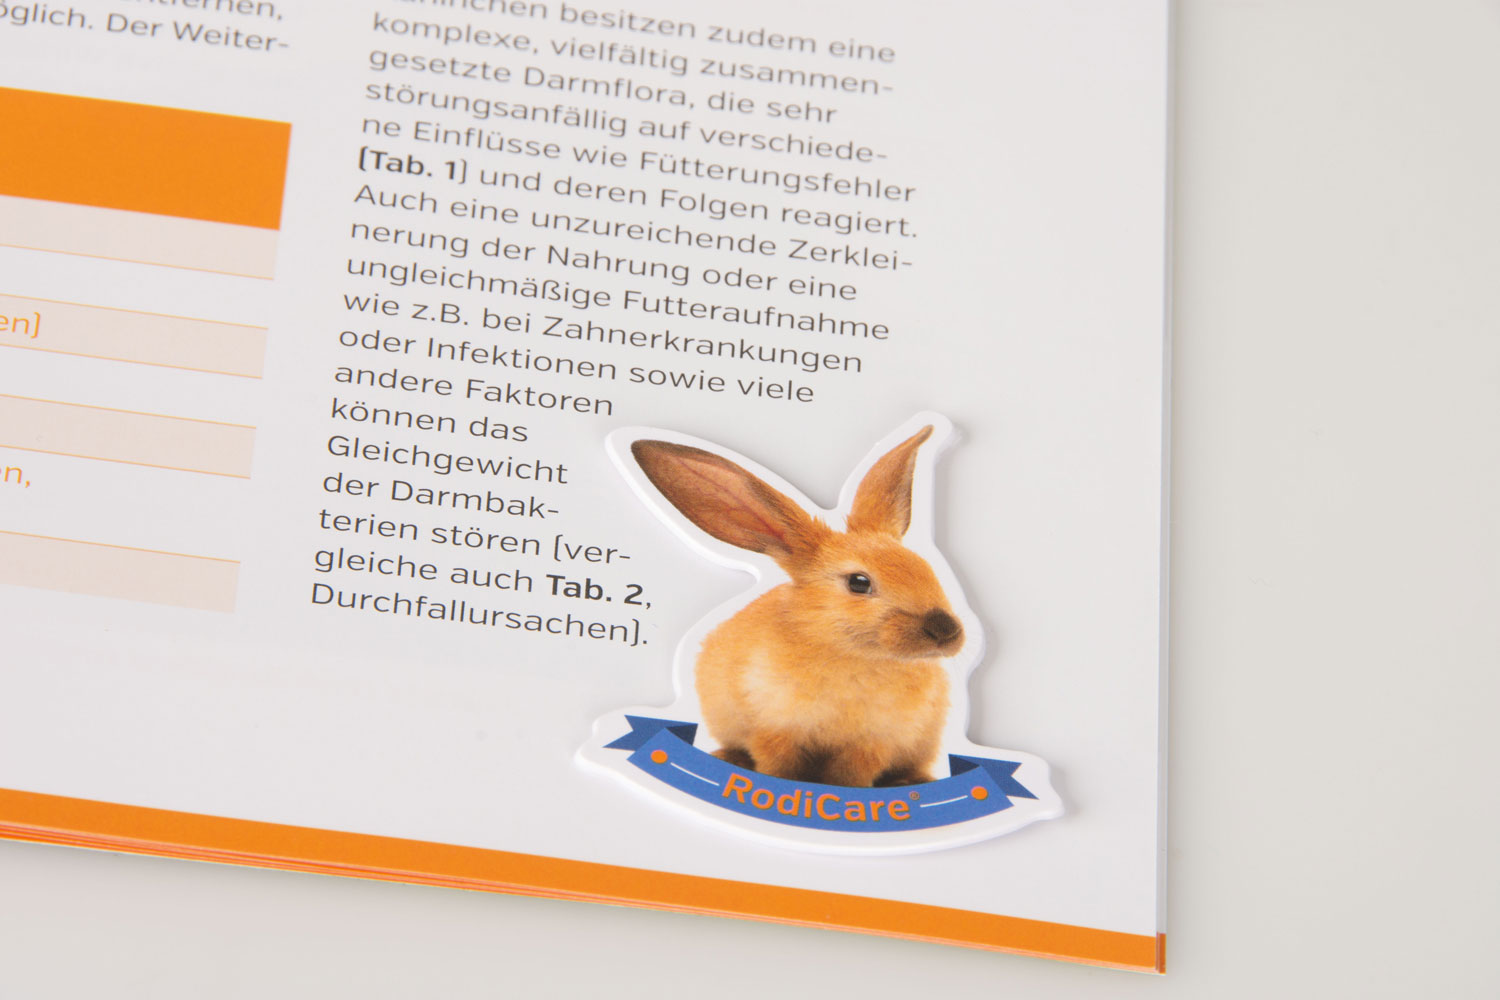 medienhandwerk referenzen magazin kaninchen spezial alfavet